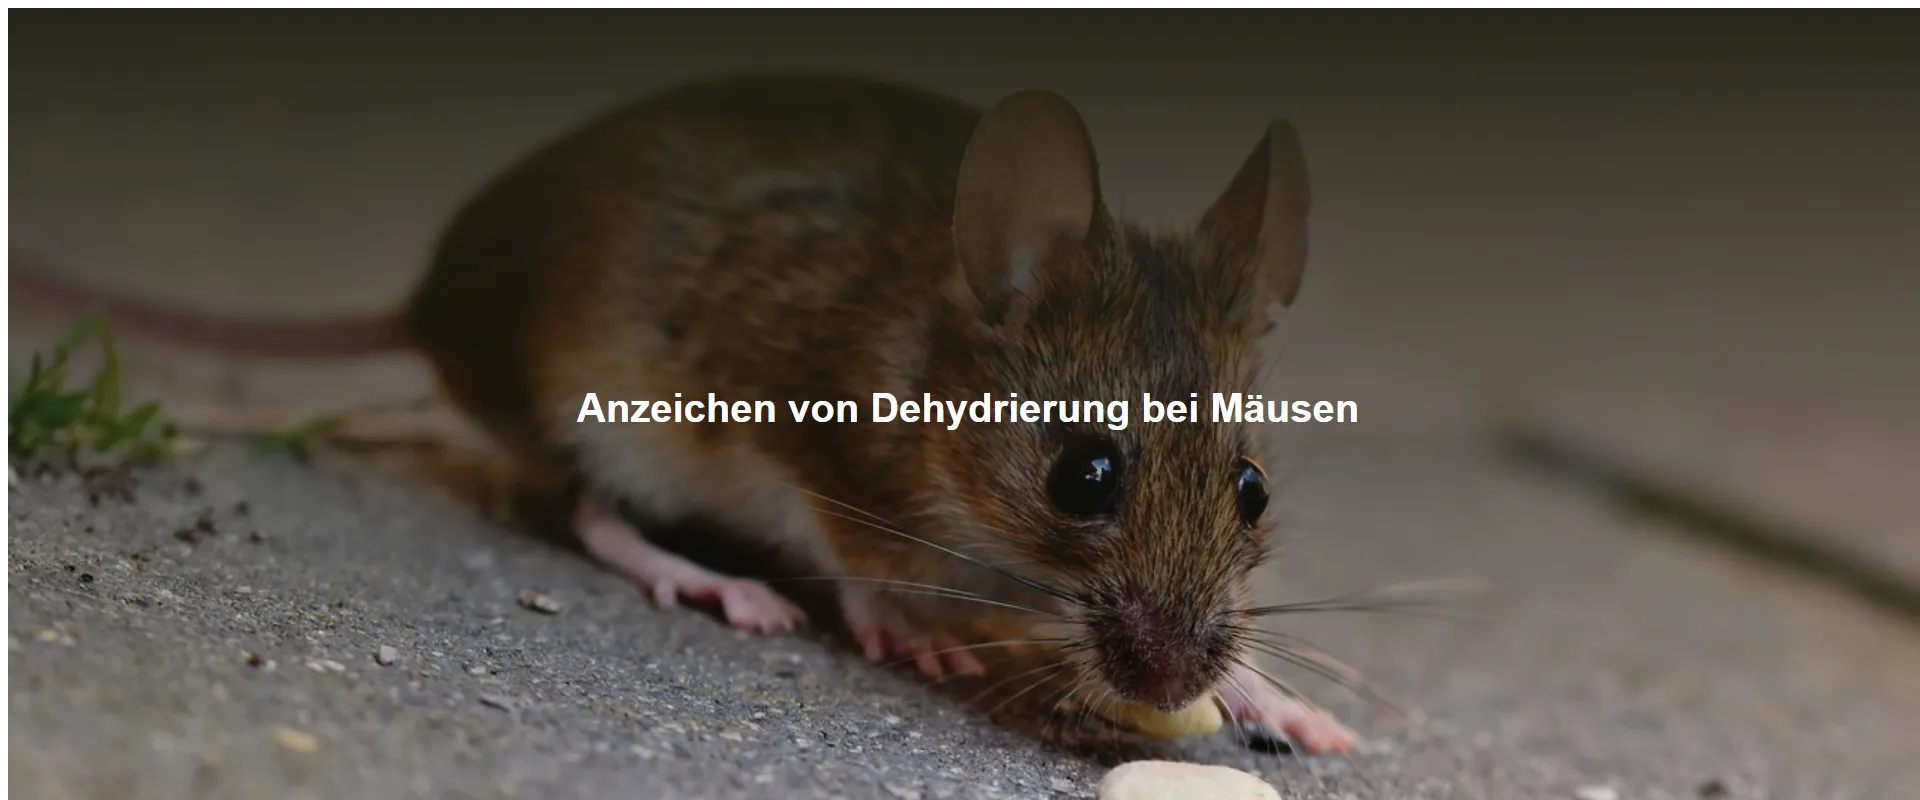 Anzeichen von Dehydrierung bei Mäusen